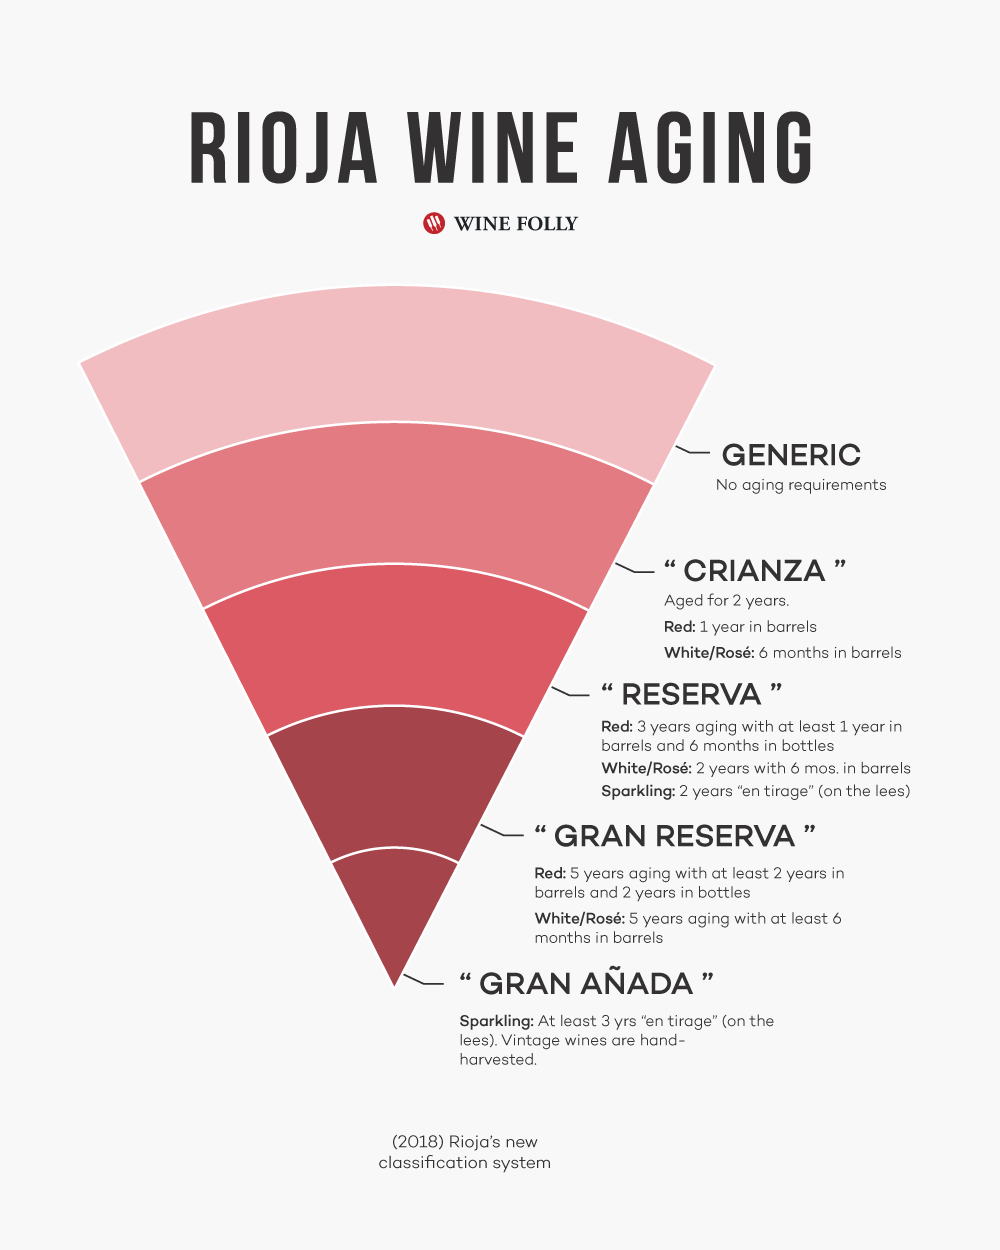 Systém klasifikácie starnutia vína Rioja vrátane Crianza, Reserva, Gran Reserva a Gran Anada